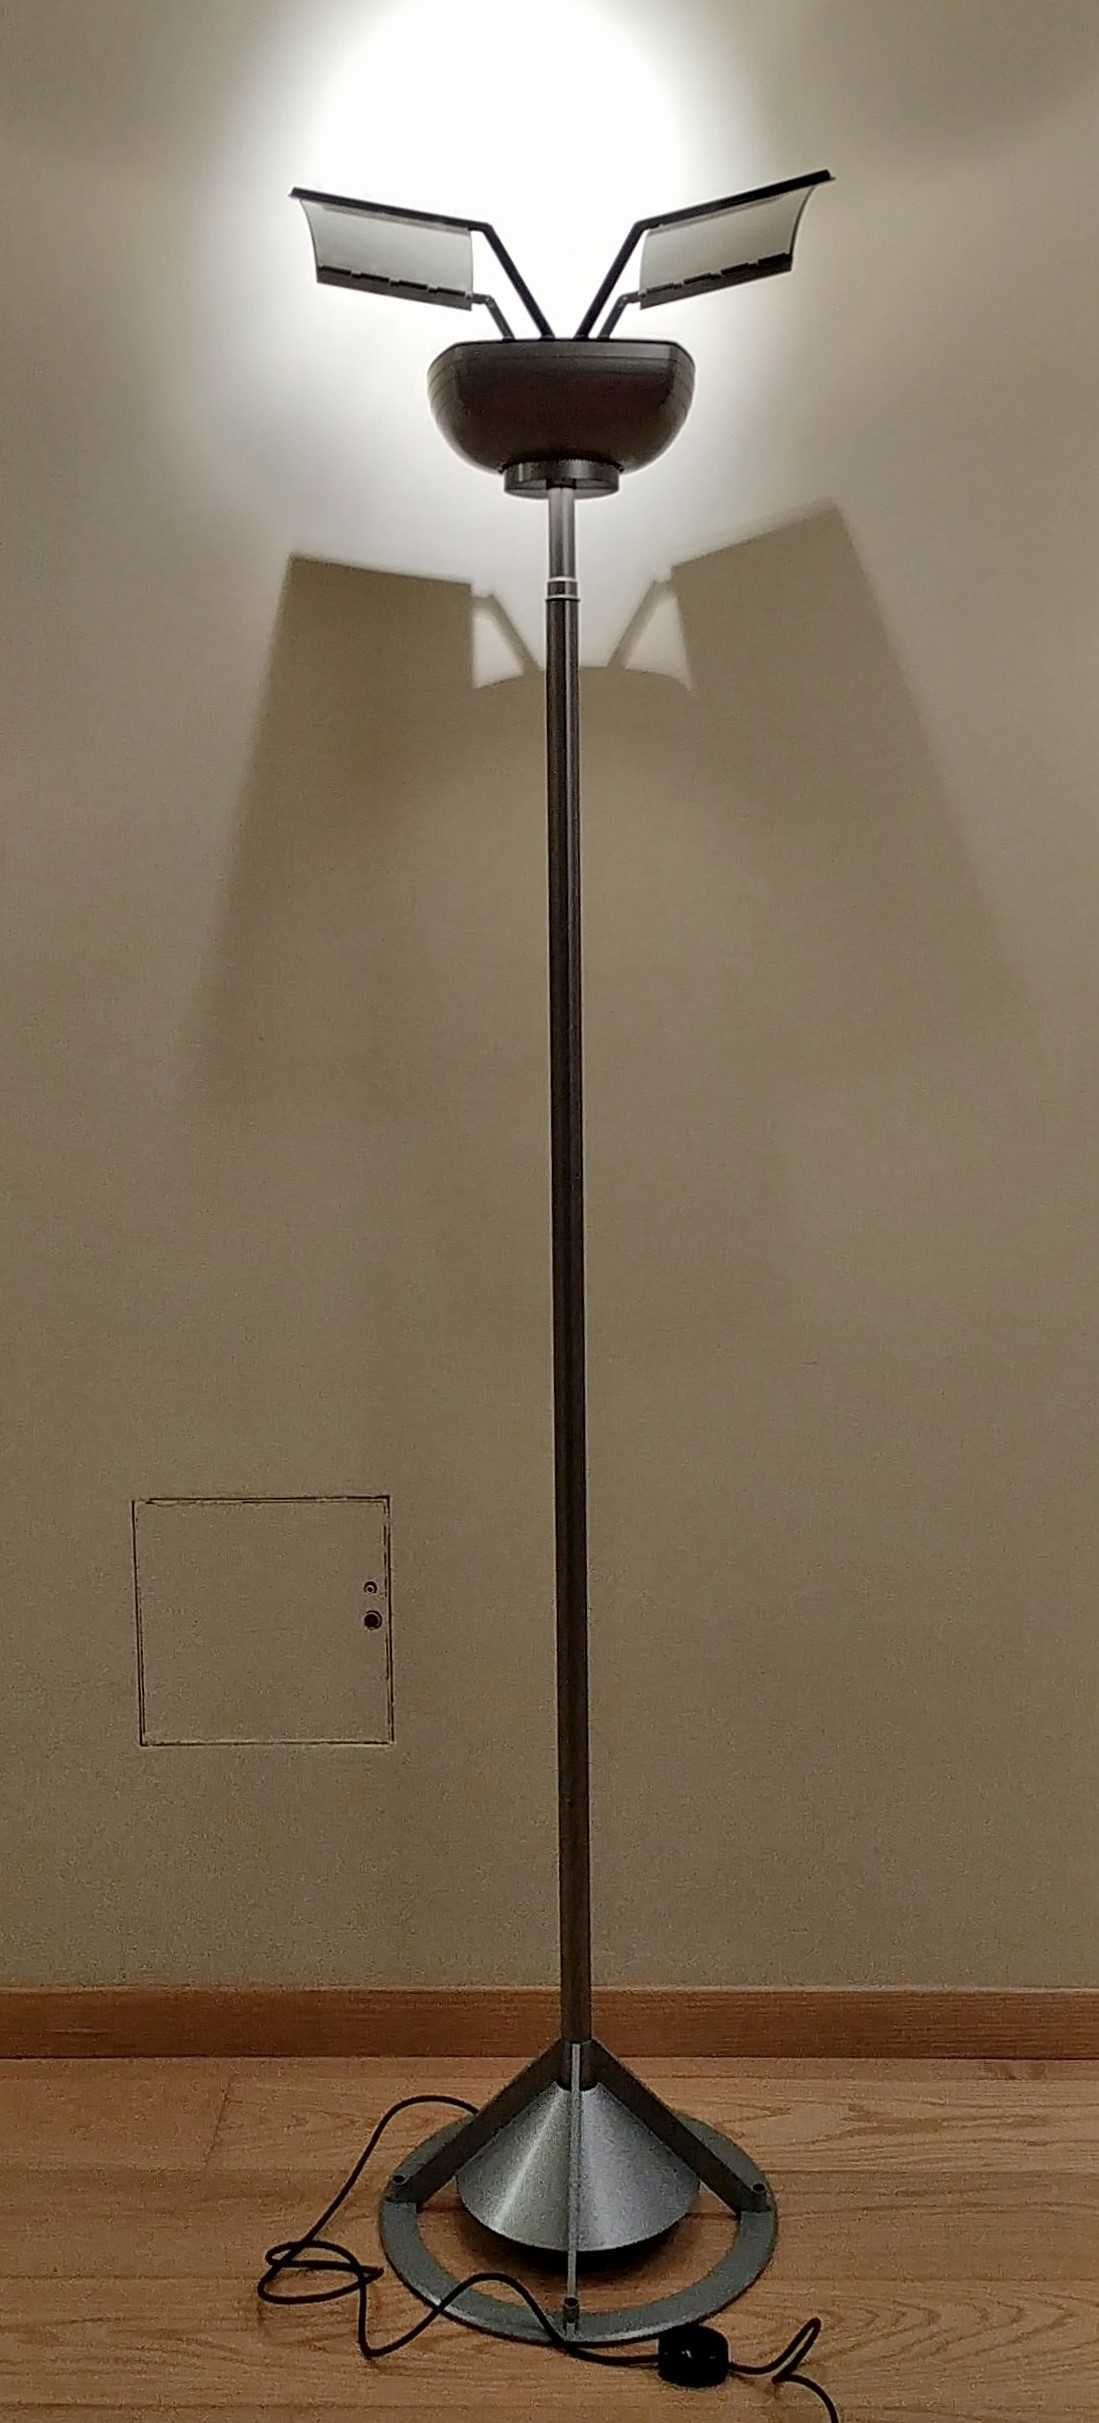 Lampa stojąca firmy ERCO model Zenith - unikat